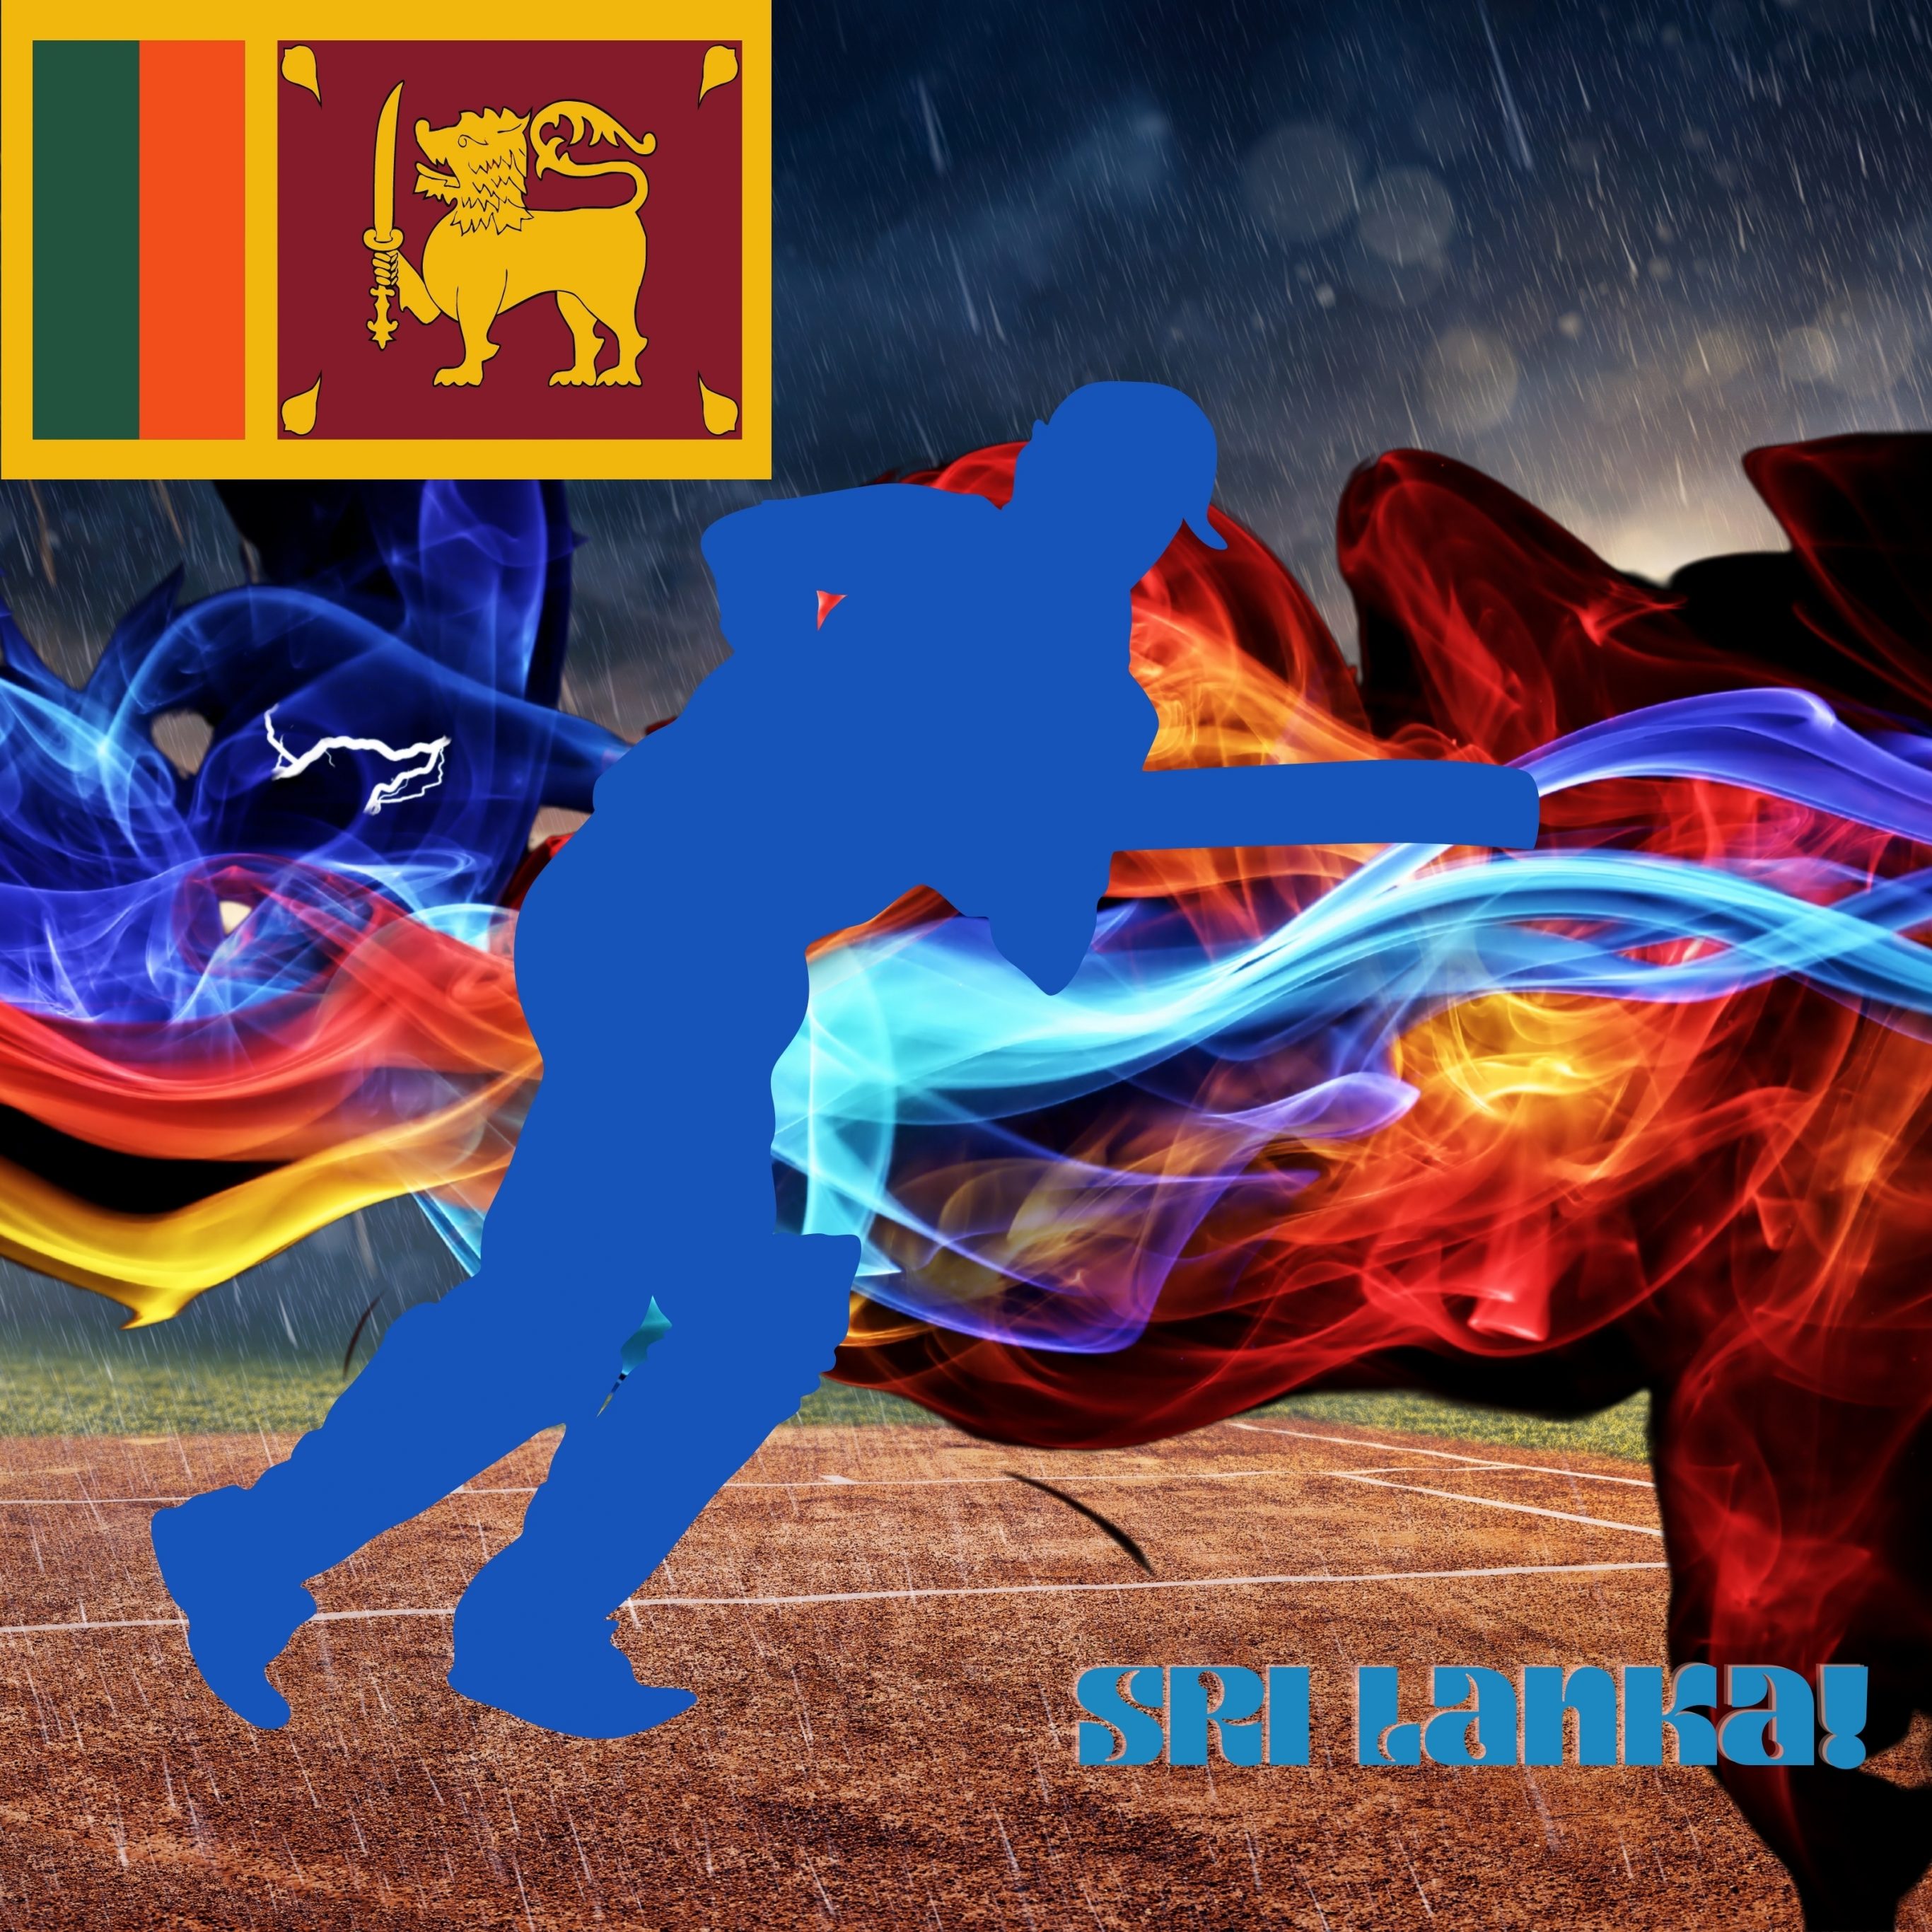 2732x2732 wallpapers 4k iPad Pro Sri Lanka Cricket Stadium iPad Wallpaper 2732x2732 pixels resolution